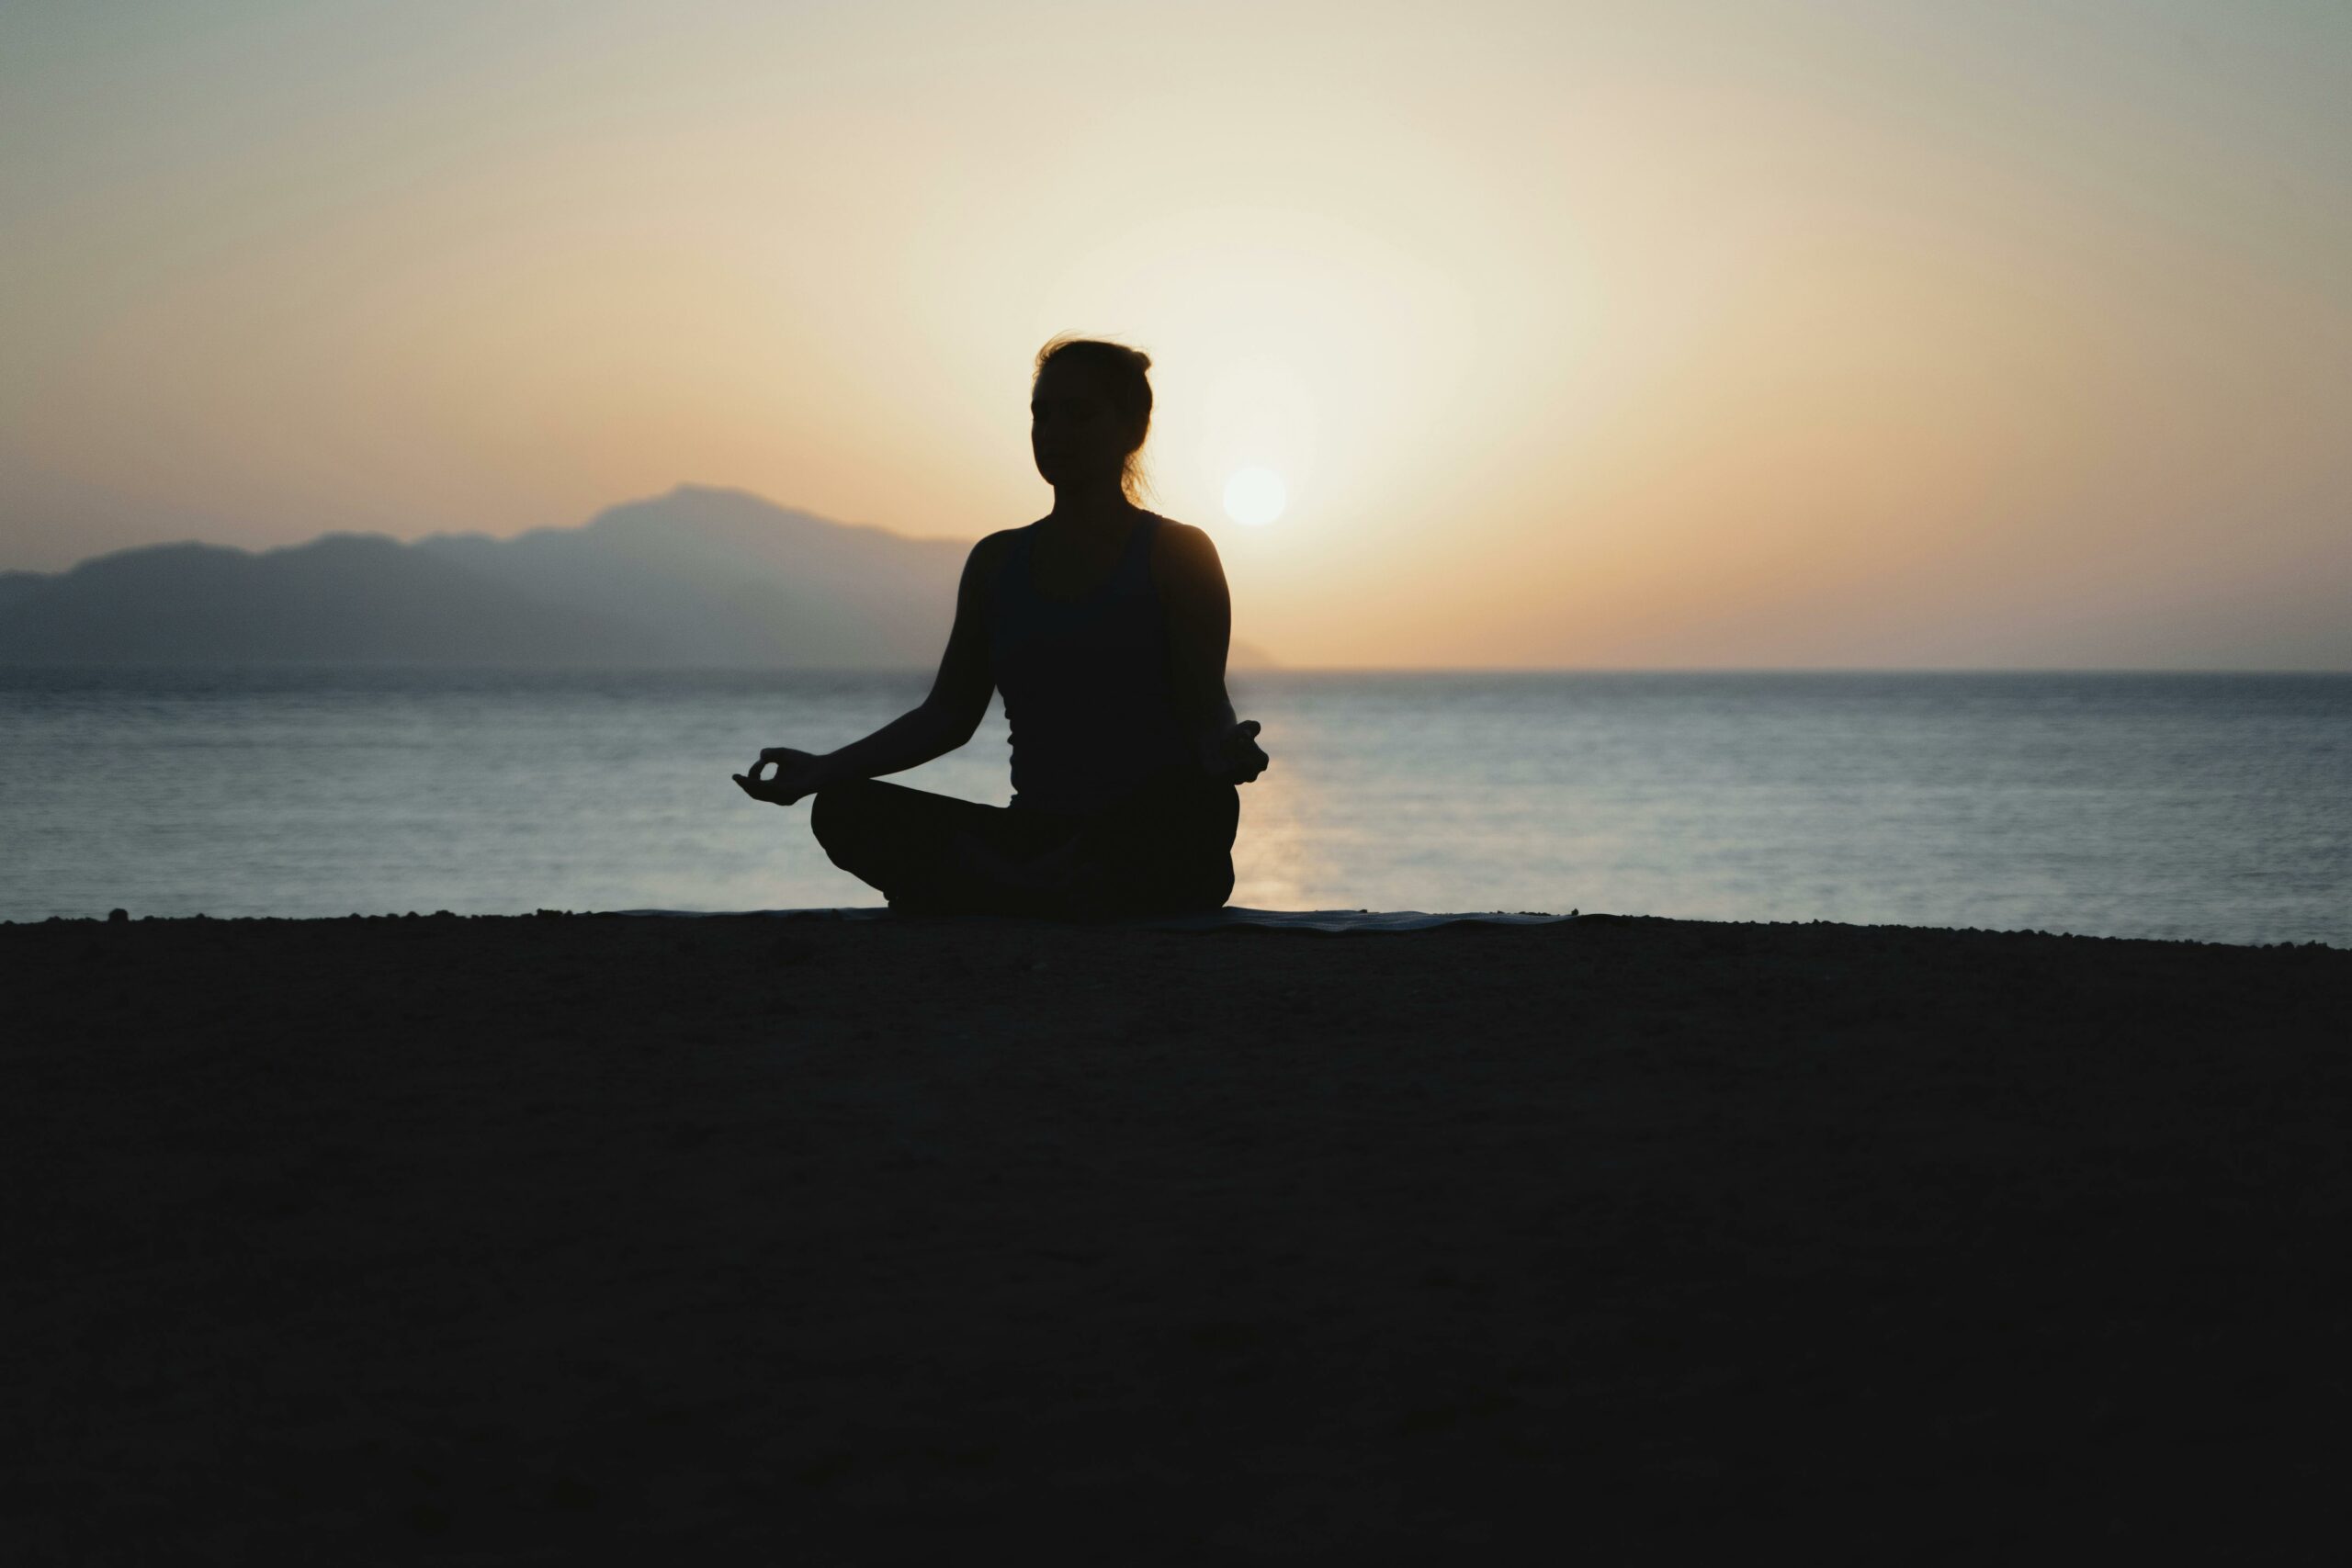 sunset meditation yoga